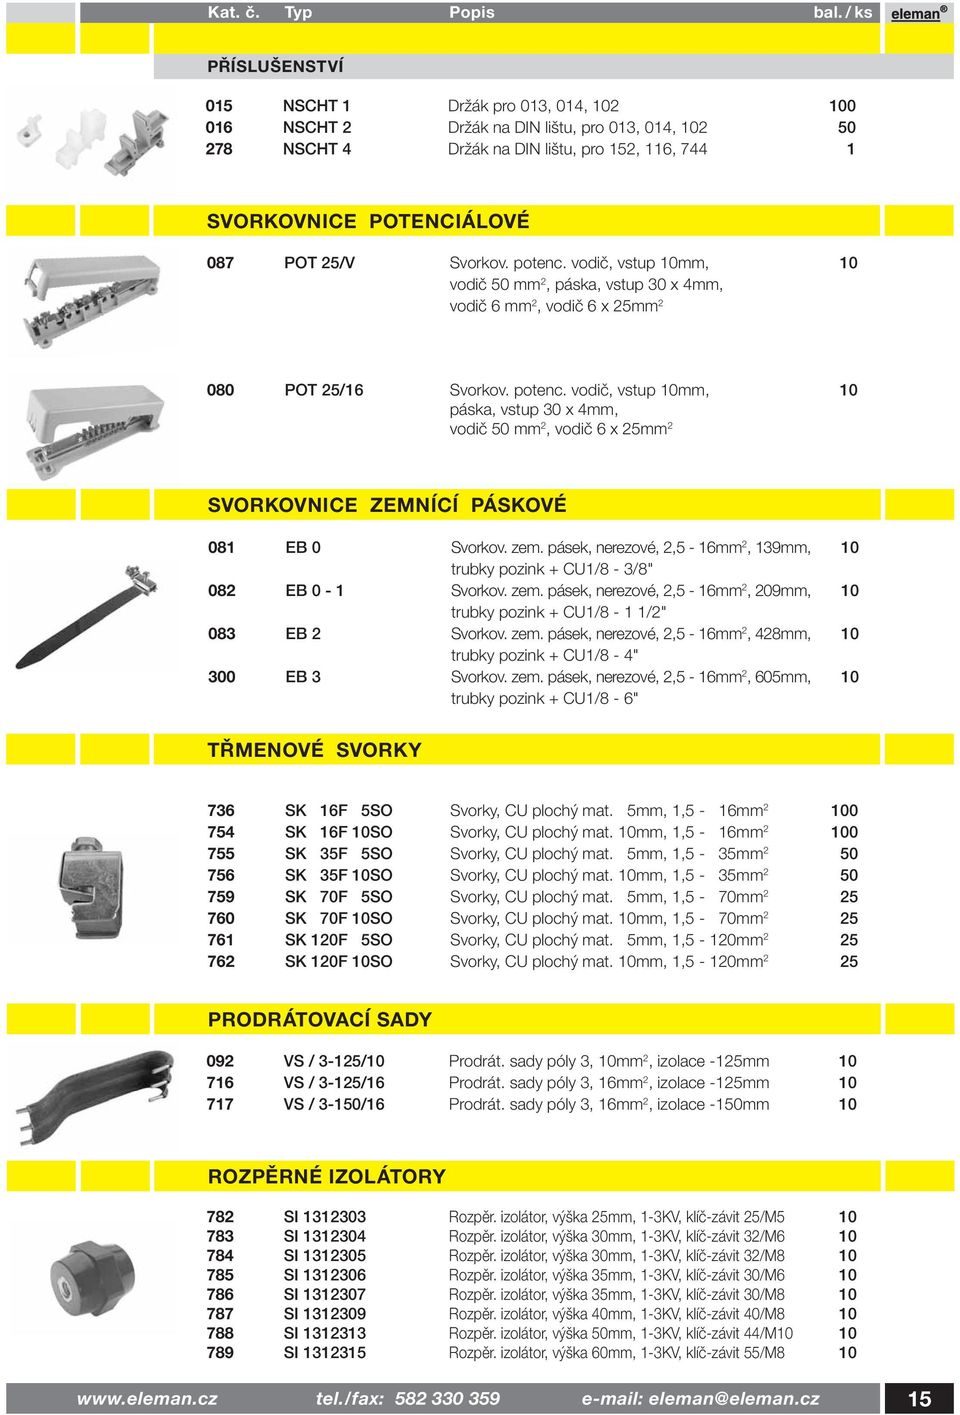 zem. pásek, nerezové, 2,5-16mm 2, 139mm, 10 trubky pozink + CU1/8-3/8" 082 EB 0-1 Svorkov. zem. pásek, nerezové, 2,5-16mm 2, 209mm, 10 trubky pozink + CU1/8-1 1/2" 083 EB 2 Svorkov. zem. pásek, nerezové, 2,5-16mm 2, 428mm, 10 trubky pozink + CU1/8-4" 300 EB 3 Svorkov.